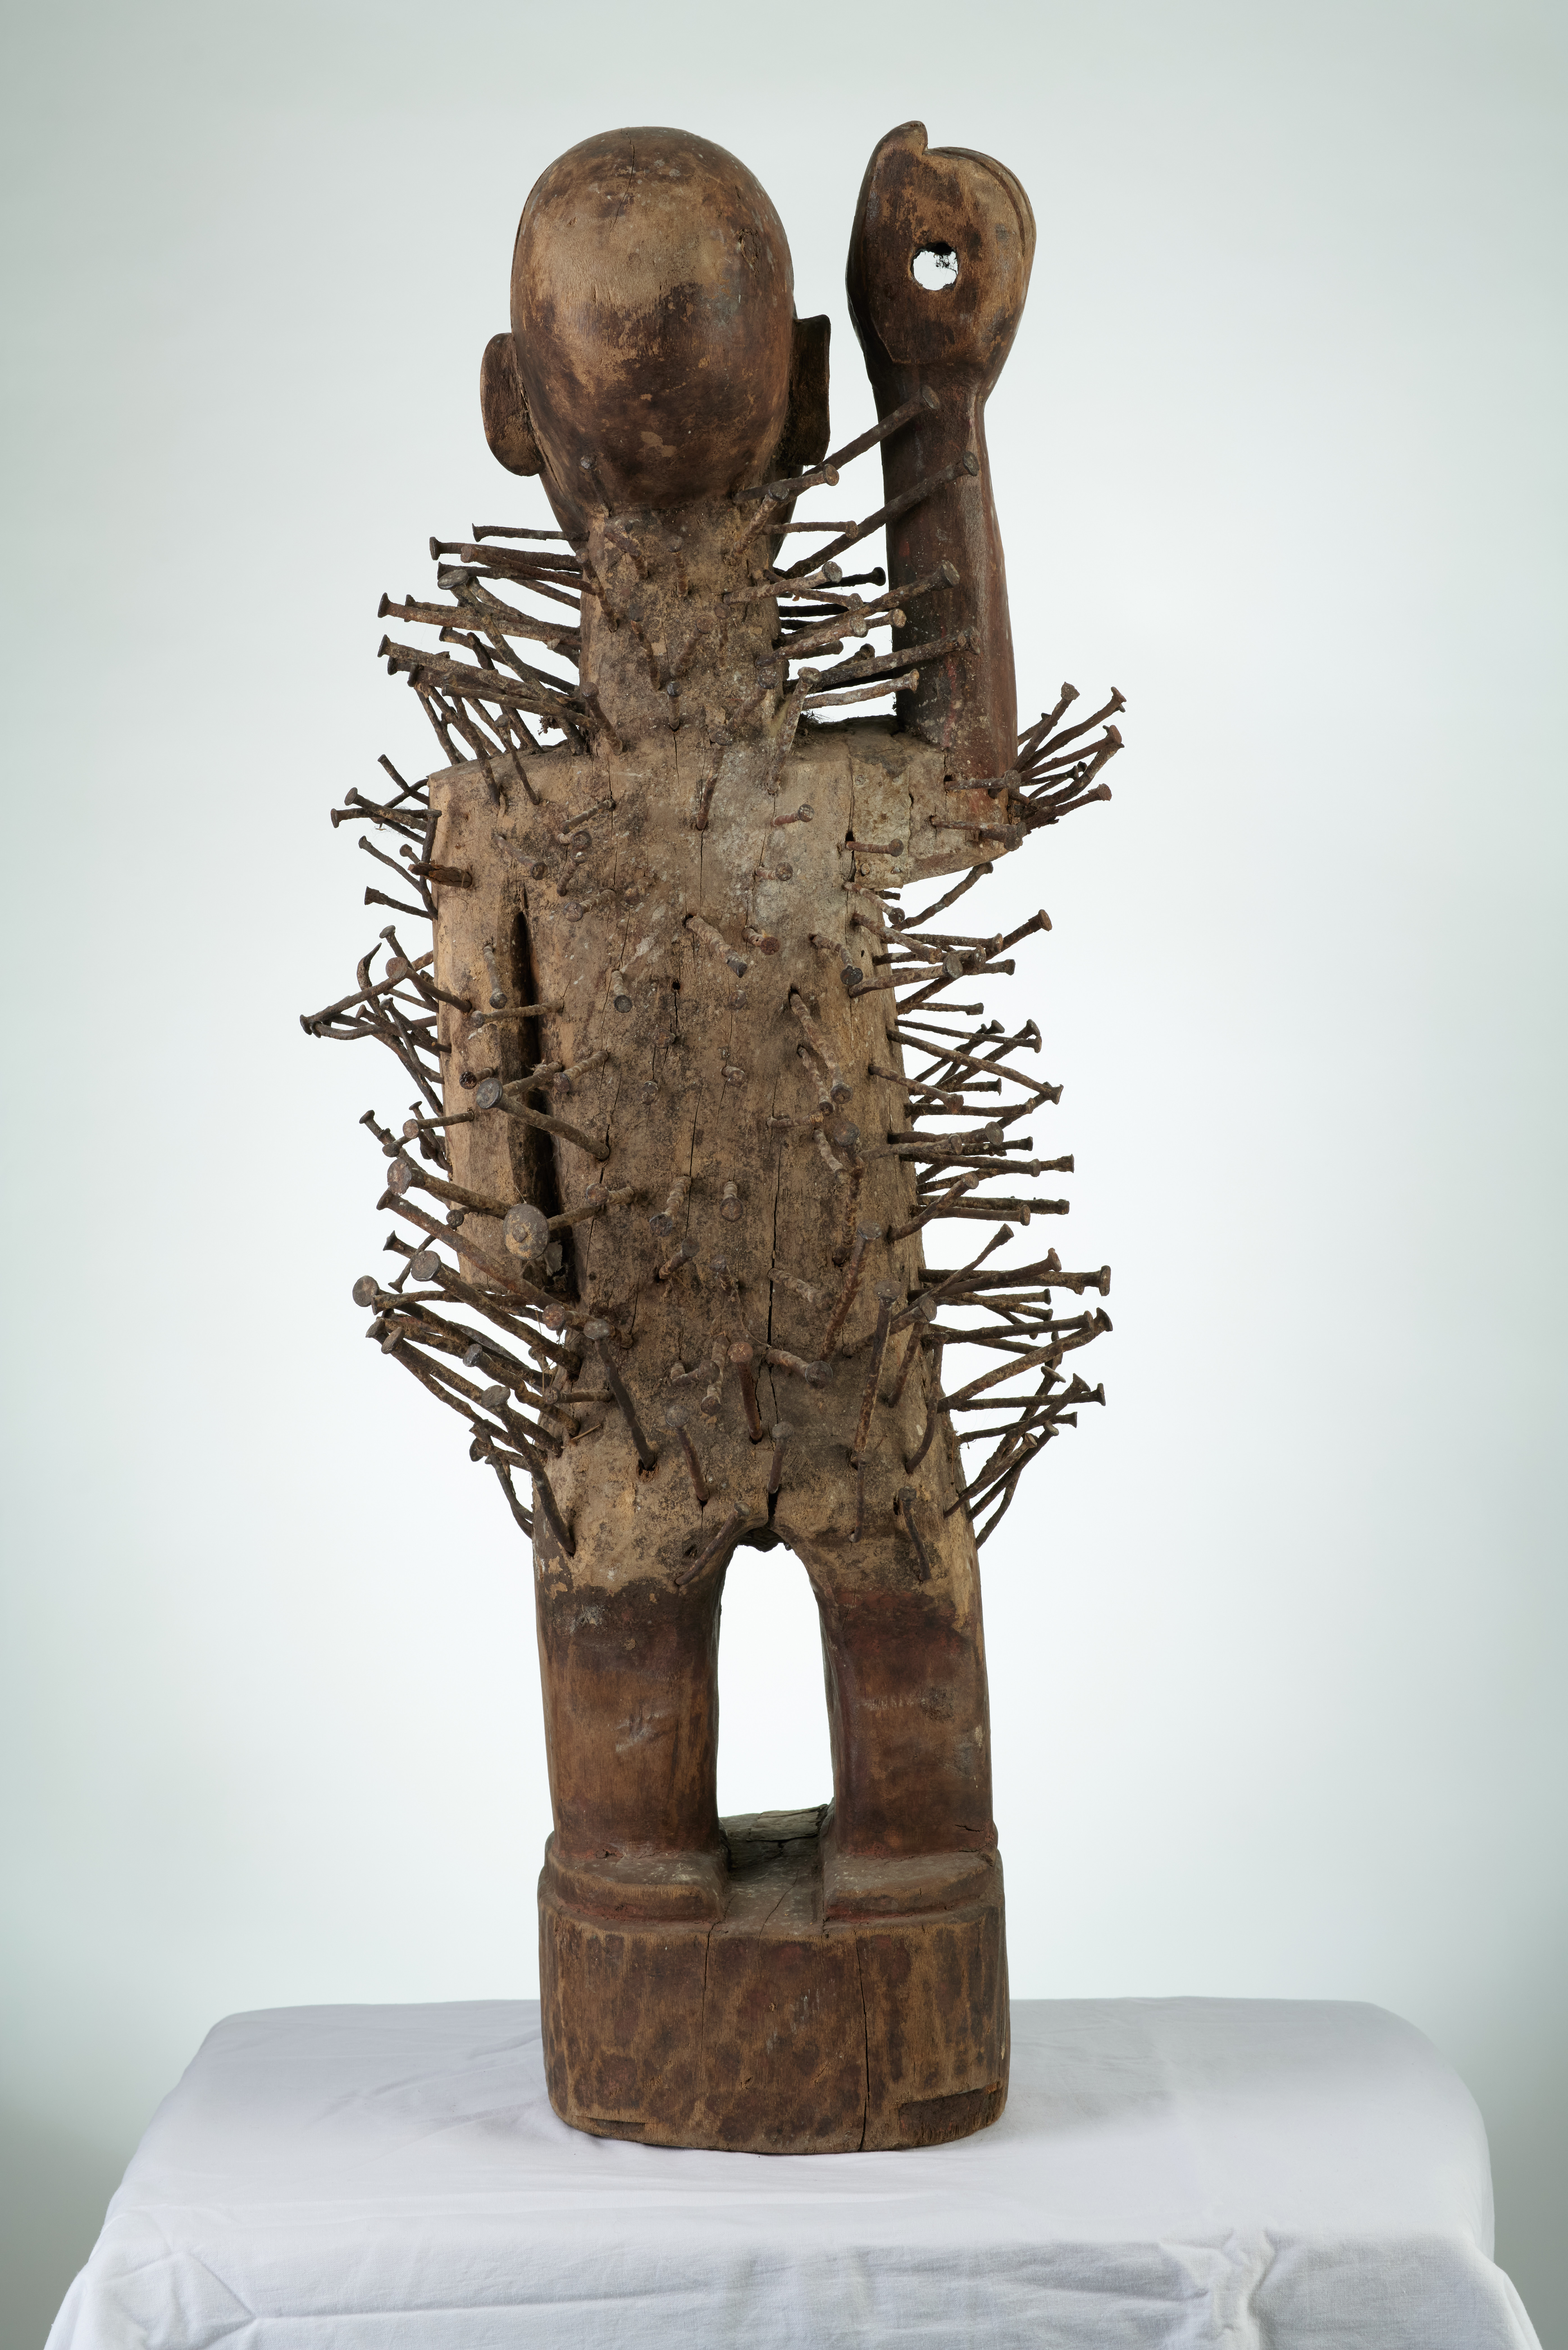 kongo(statue à clous), d`afrique : rep.dem.Congo, statuette kongo(statue à clous), masque ancien africain kongo(statue à clous), art du rep.dem.Congo - Art Africain, collection privées Belgique. Statue africaine de la tribu des kongo(statue à clous), provenant du rep.dem.Congo, 1823 Fétiche  YOMBE à clous et à miroir nommé NKONDI.Ils ont souvent une expression agressive la bouche entrouverte et le bras levé pour une arme.prêt à punir une personne .les statues étaient utilisées par le NGANGA (féticheur) qui plantait des clous ,insultait la statue afin de stimuler   et d